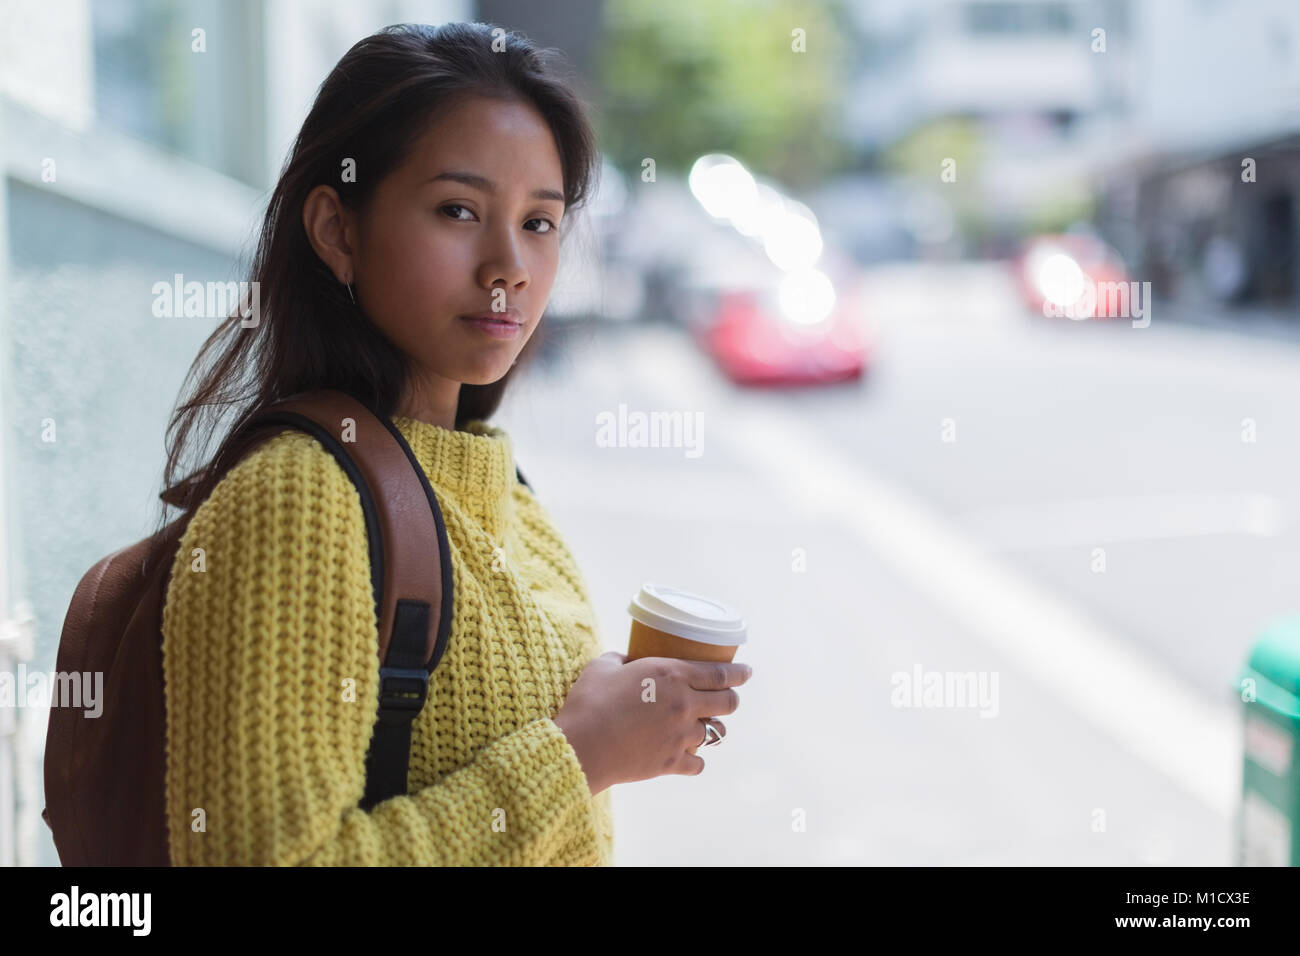 Adolescente sosteniendo una taza de café desechables Foto de stock